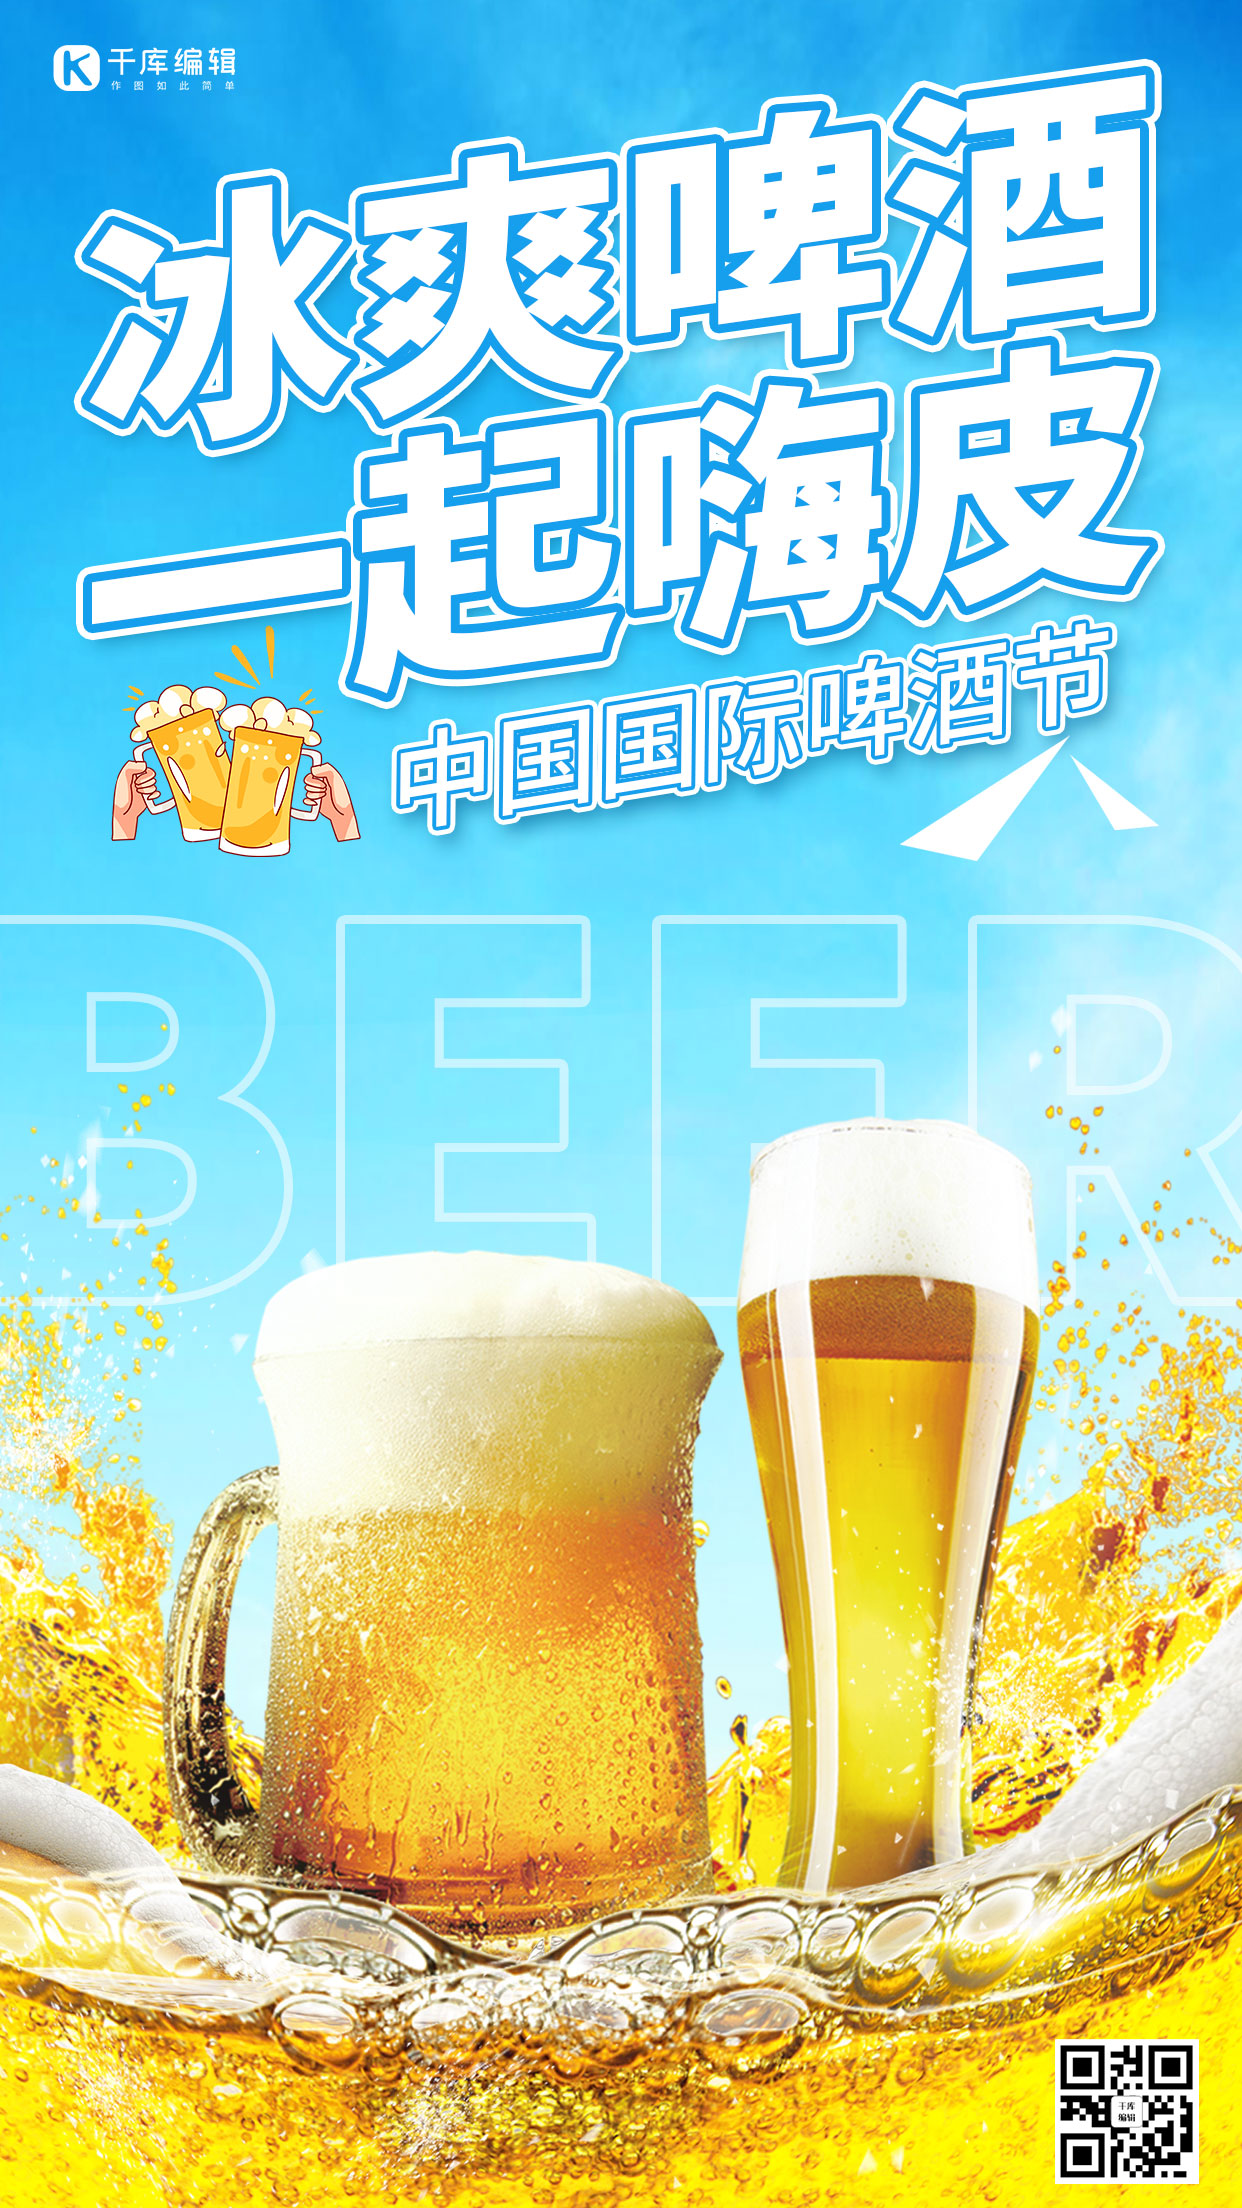 中国国际啤酒节冰爽啤酒蓝色黄色炫酷手机海报图片